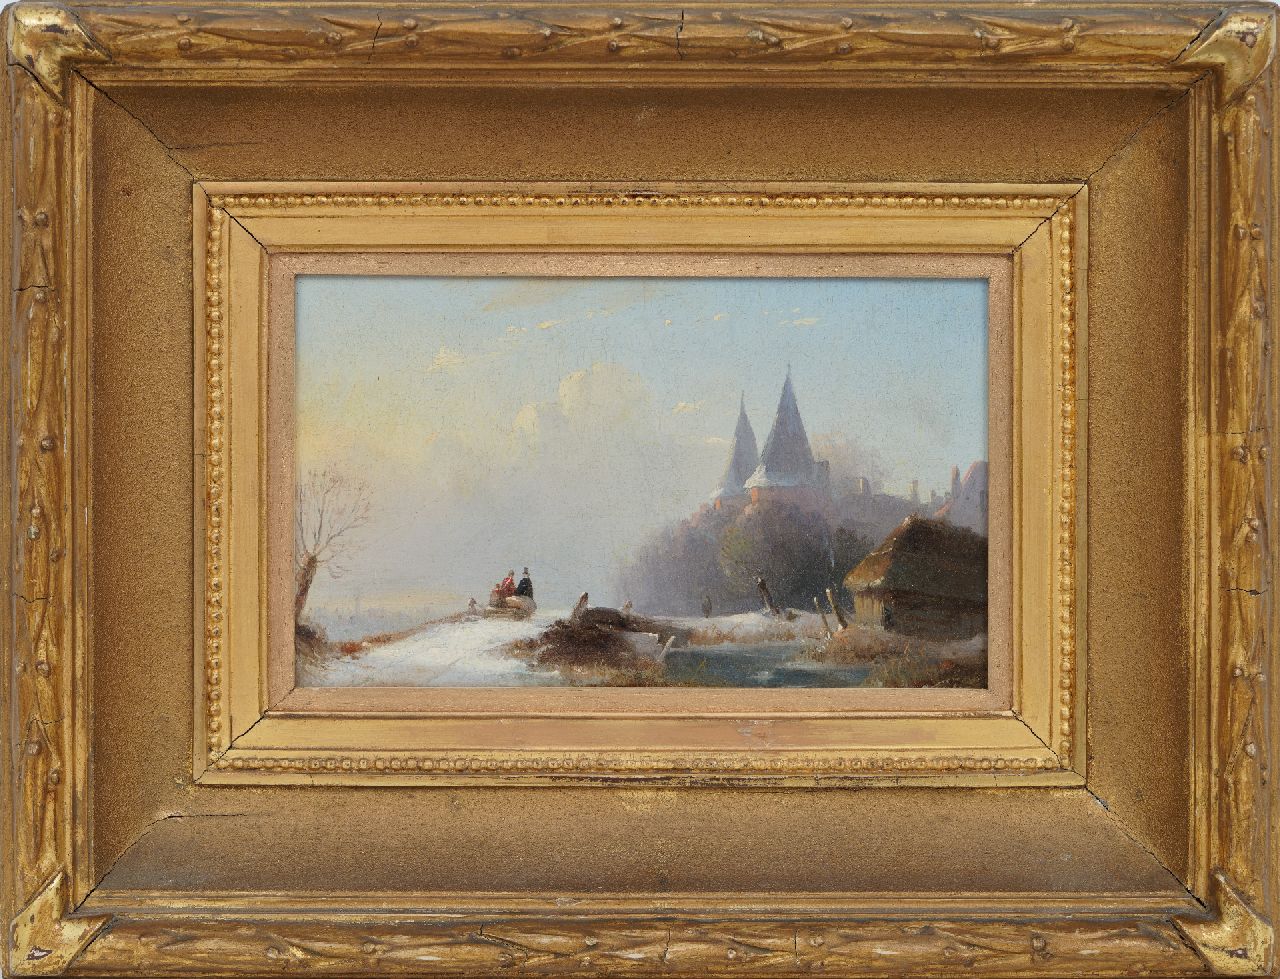 Wayen Pieterszen A. van der | Abraham van der Wayen Pieterszen, City gate in snowy landscape, oil on panel 14.3 x 22.4 cm, gesigneerd monogram AW